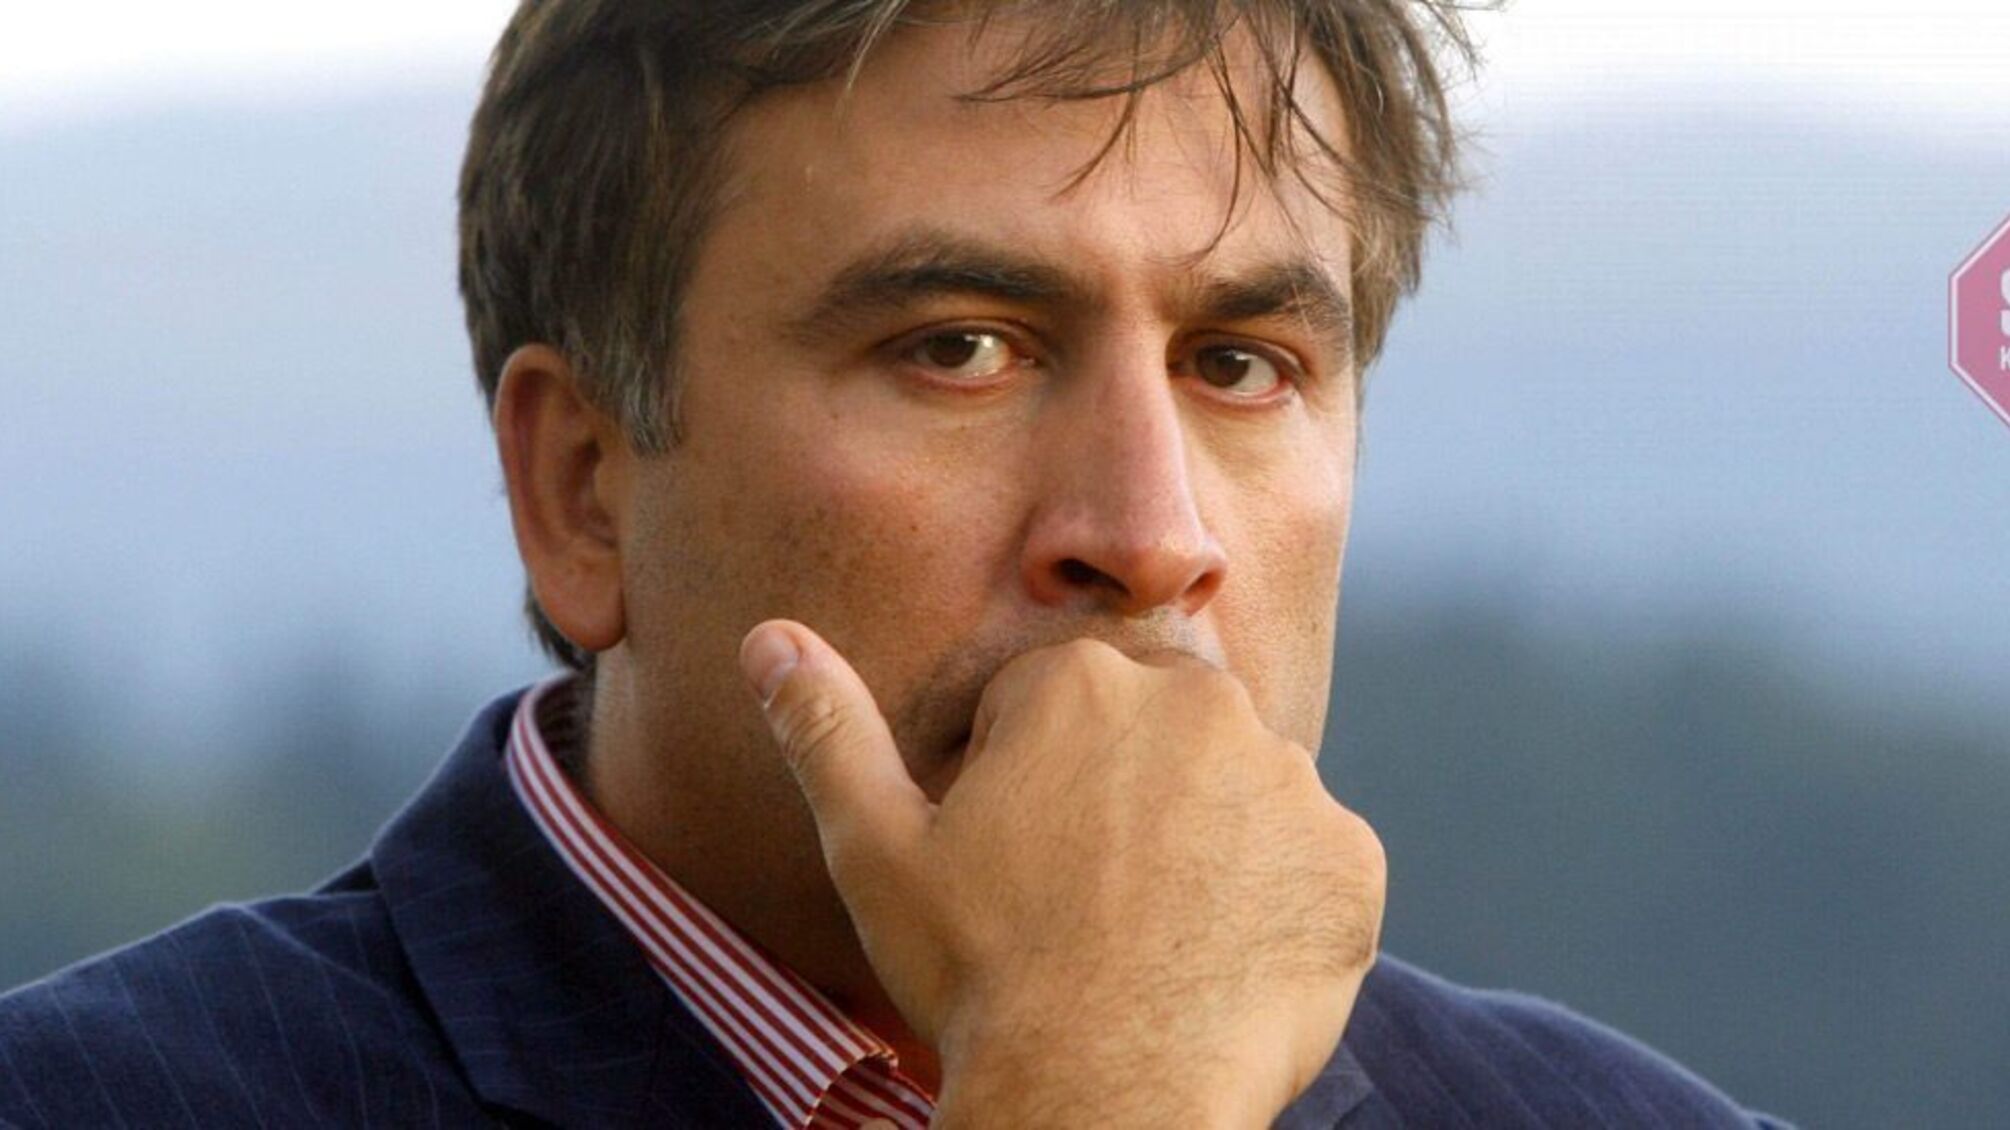 Состояние Саакашвили может резко ухудшиться, — врач